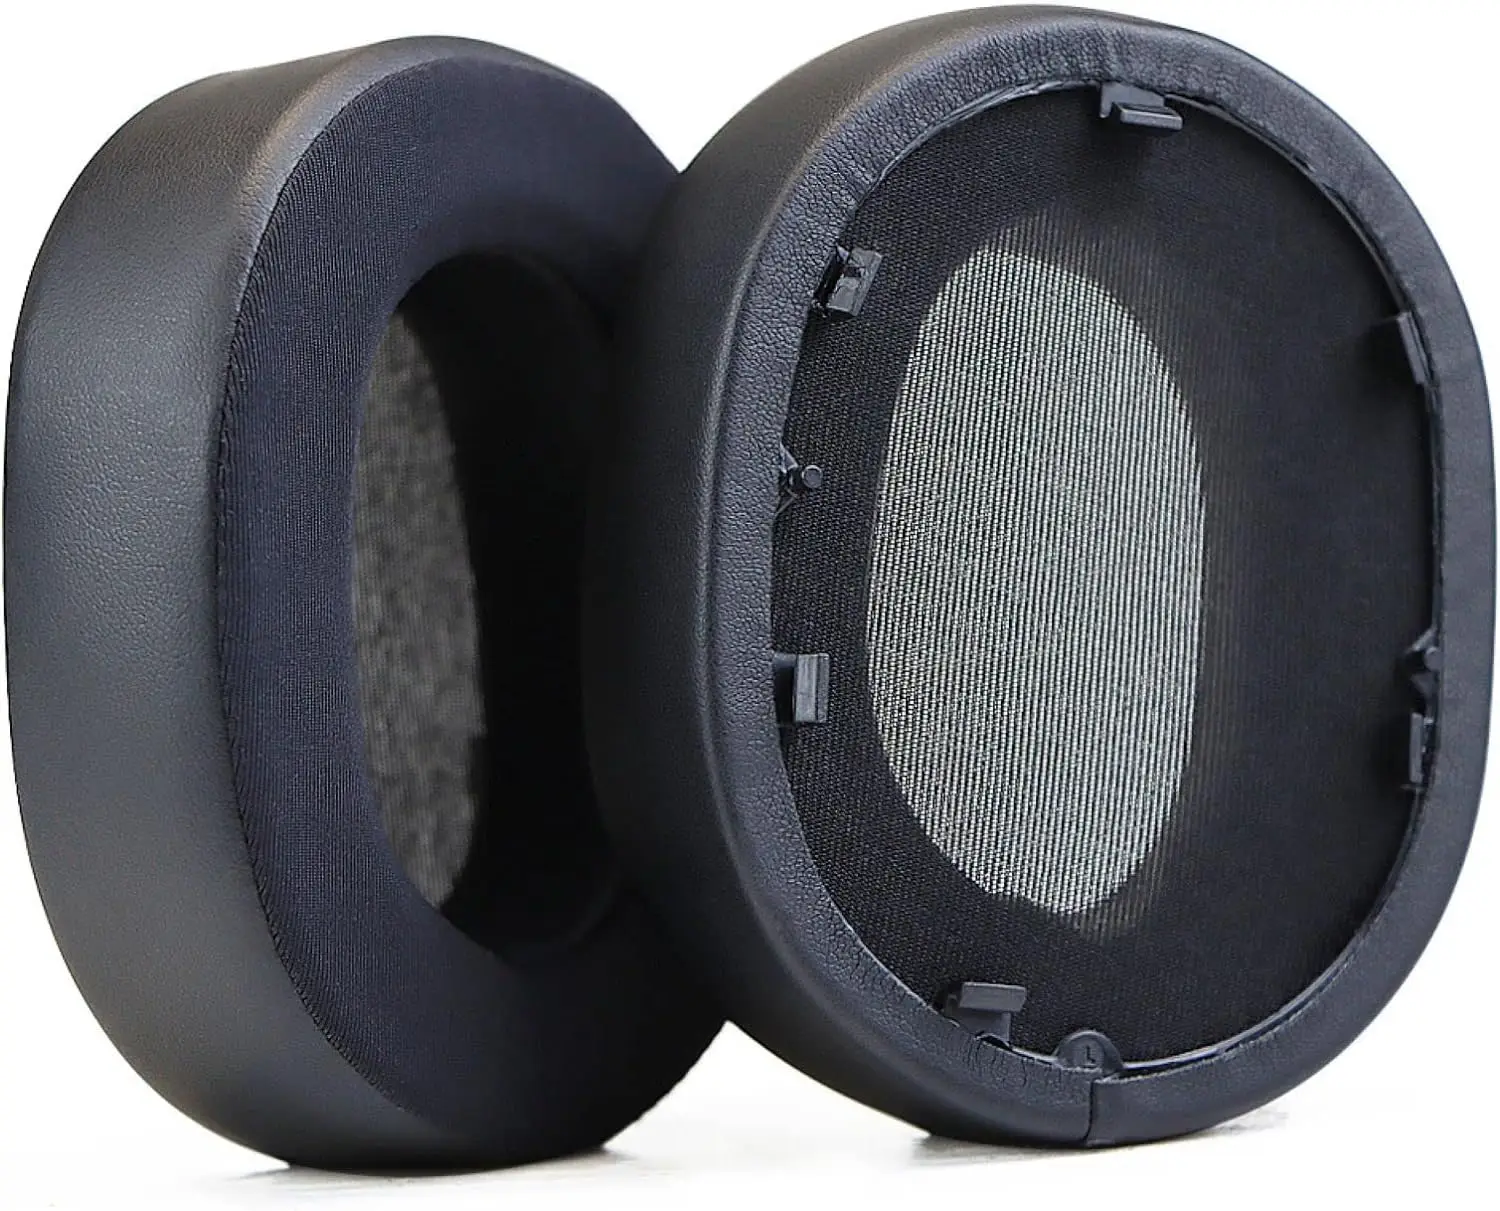 Замена амбушюр, наушники Sony WH-1000XM5 с шумоподавлением, амбушюры с шумоизоляцией memory foam (протеиновая кожа